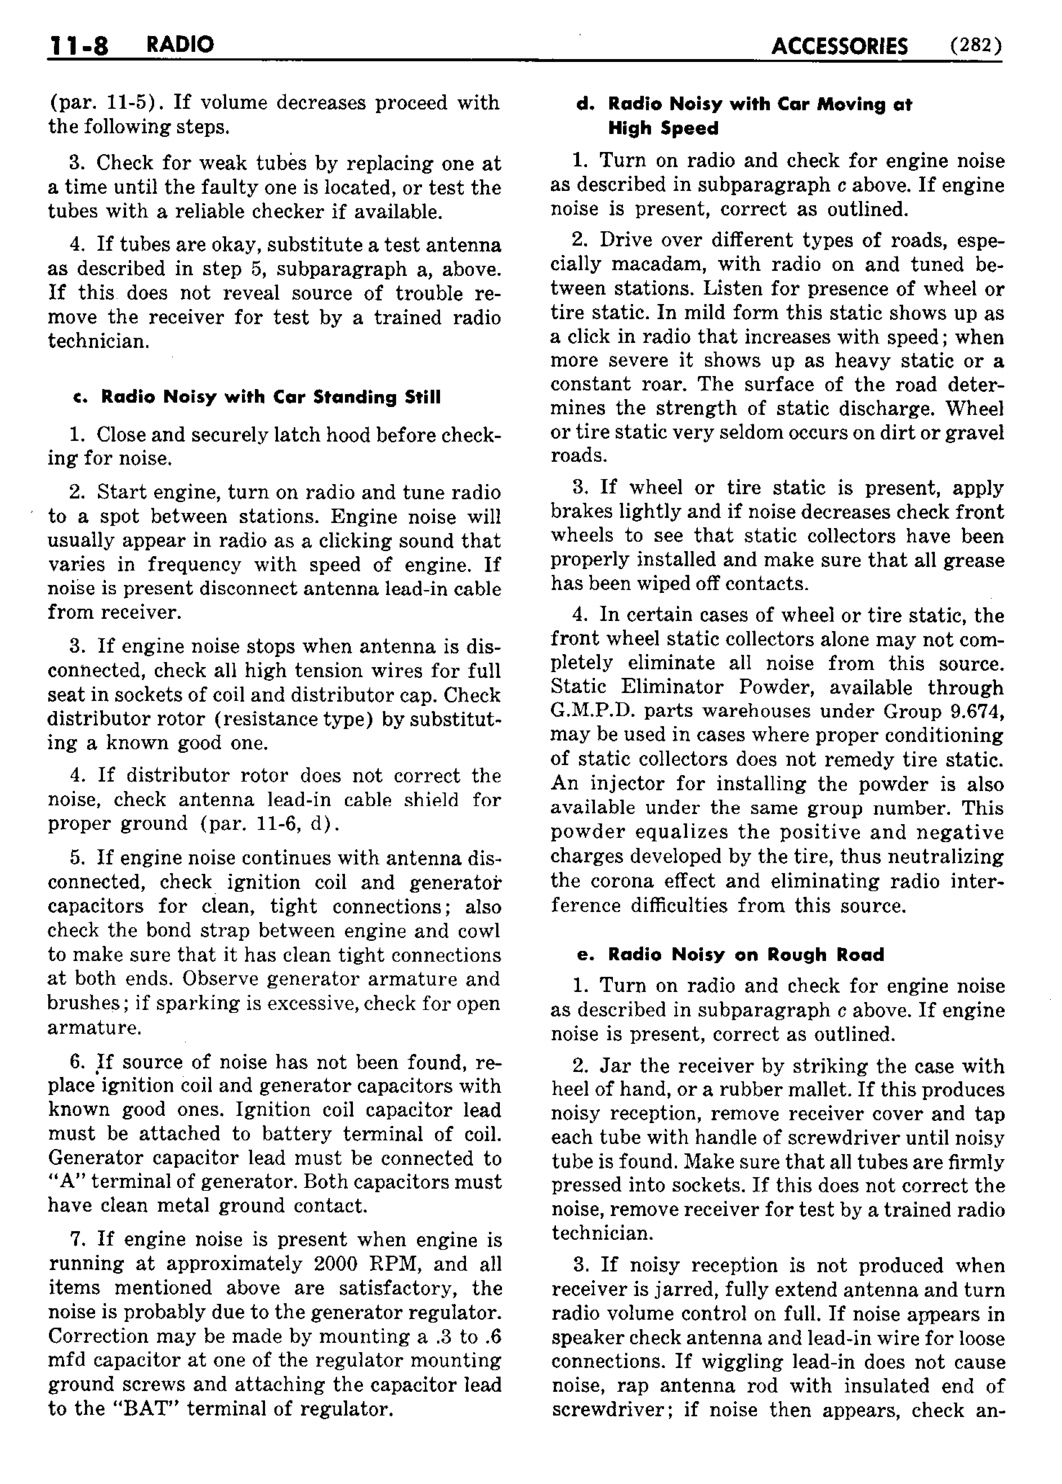 n_12 1953 Buick Shop Manual - Accessories-008-008.jpg